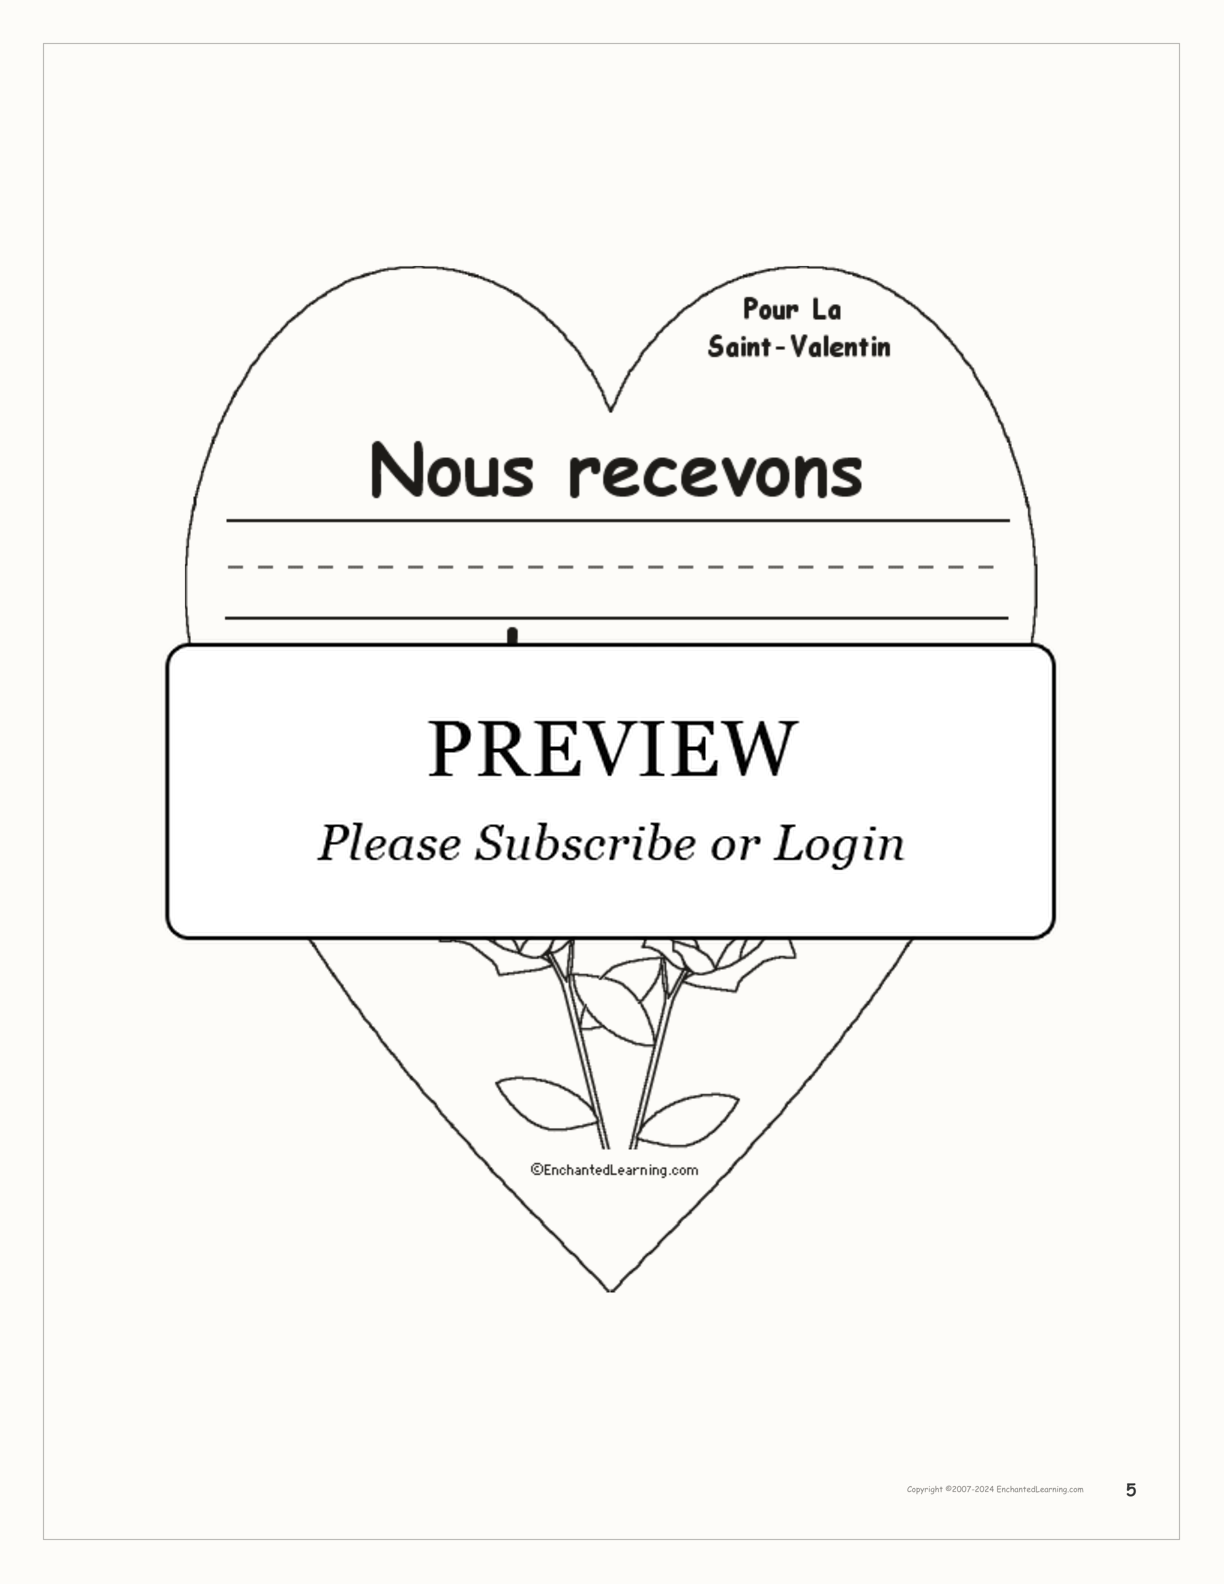 Pour la Saint-Valentin interactive worksheet page 5